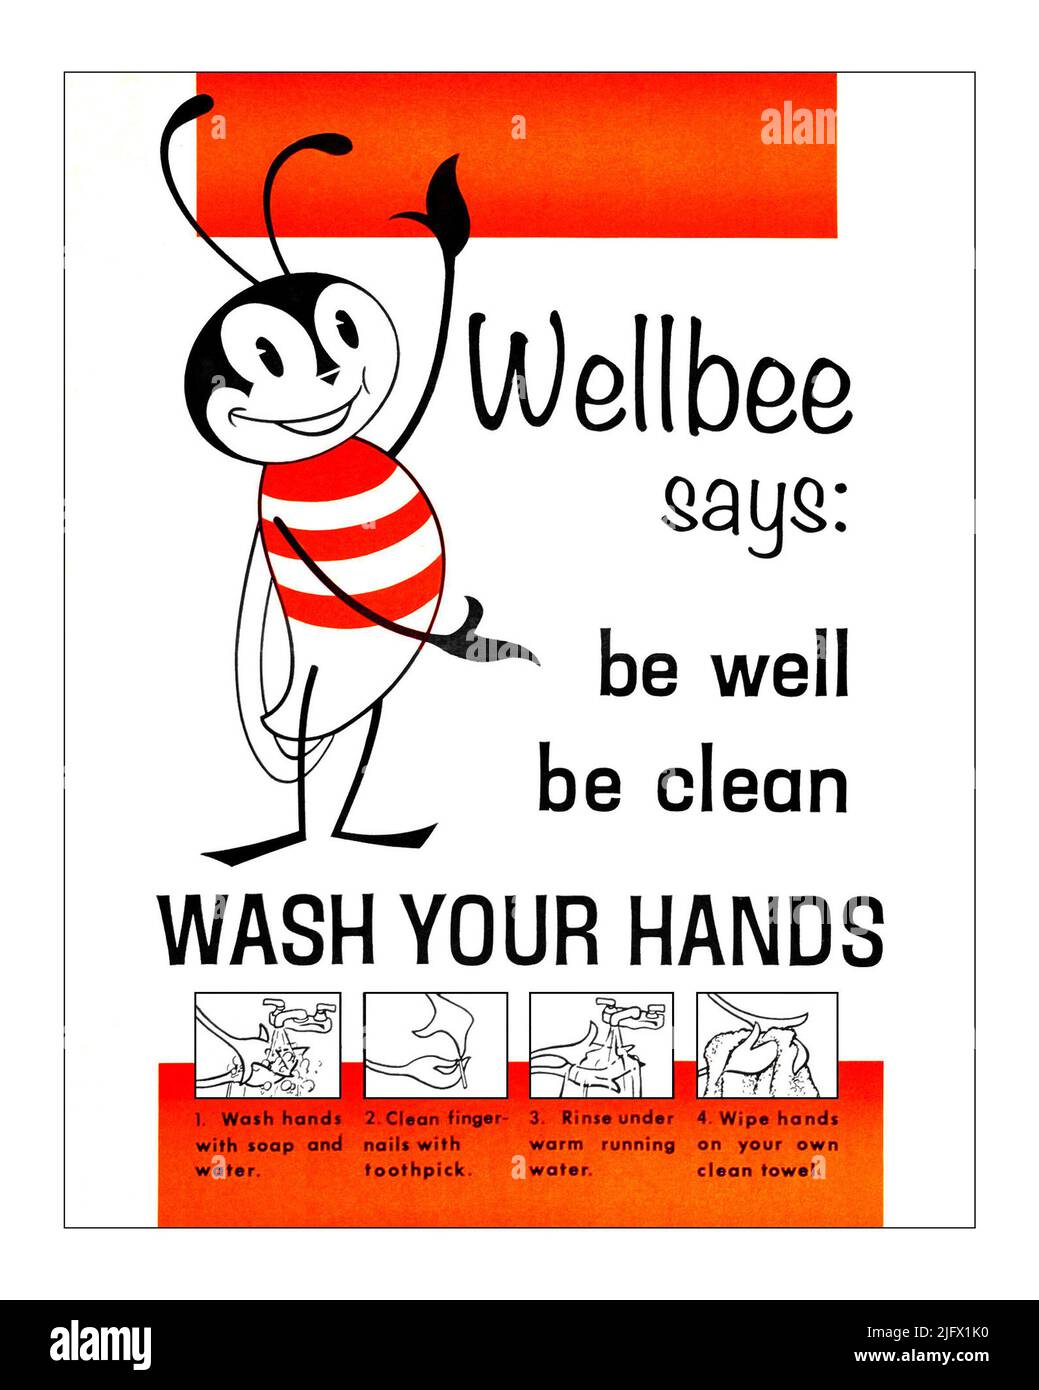 Cette affiche de 1964 présentait le symbole de la santé publique du CDC américain, le Wellbee, qui rappelait au public « être bien, être propre, SE LAVER LES MAINS ». CDC a utilisé Wellbee dans une campagne marketing complète. La première mission de Wellbee consistait à parrainer des campagnes de vaccin oral contre la polio (VPO) de Sabin de type II dans l'ensemble des États-Unis. Plus tard, le caractère de Wellbee a été incorporé dans d'autres campagnes de promotion de la santé qui comprenaient des vaccins contre la diphtérie et le tétanos, le lavage des mains, la condition physique et la prévention des blessures. Une version optimisée et améliorée d'une affiche produite par les CDC des États-Unis/ CDC de crédit / M.Hilpertshauser Banque D'Images